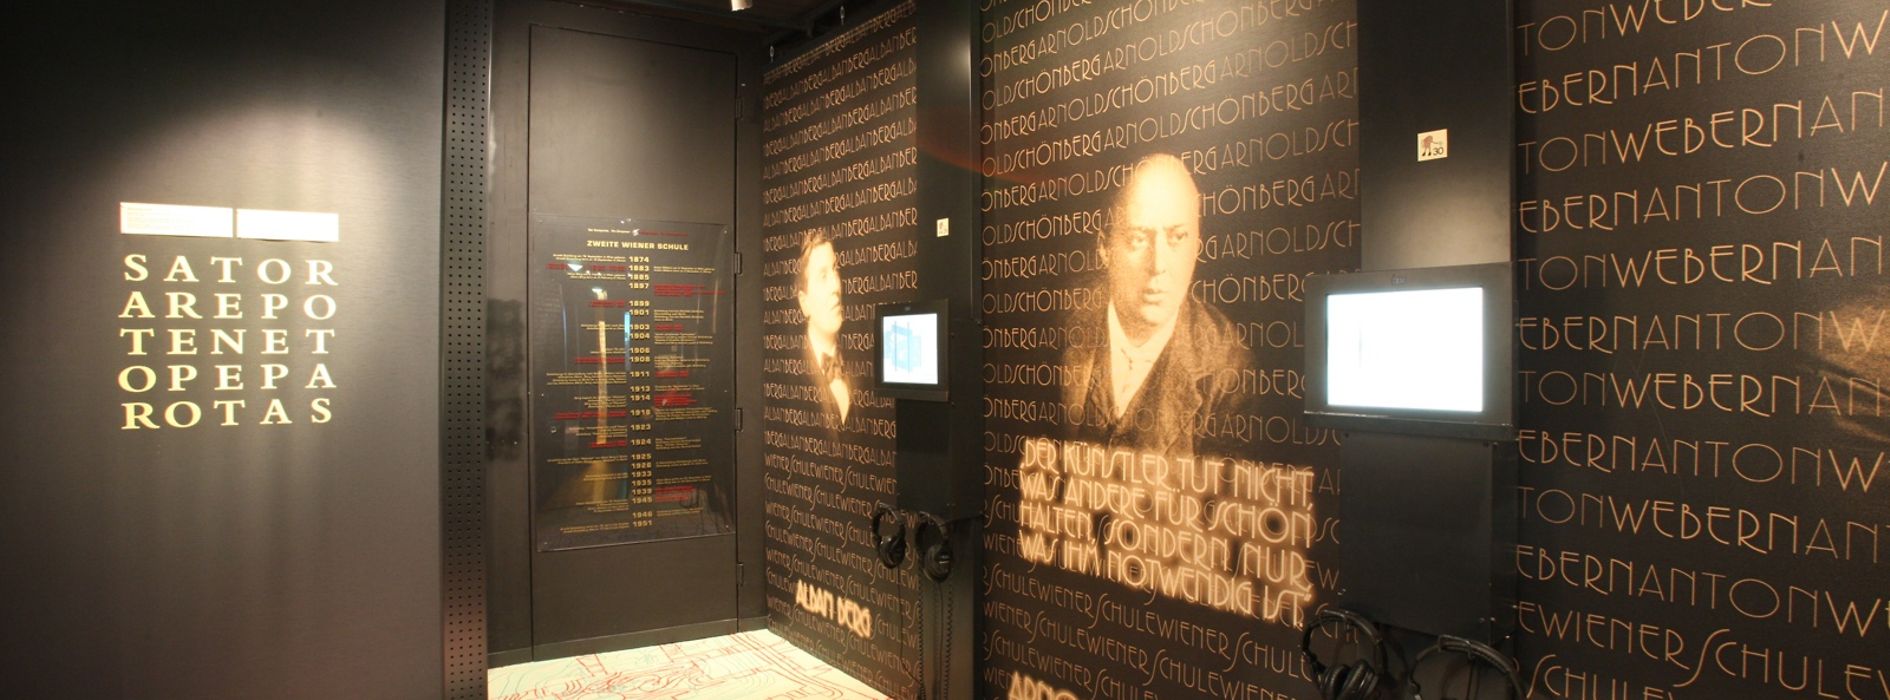 Arnold Schönberg gewidmeter Ausstellungsraum im Haus der Musik